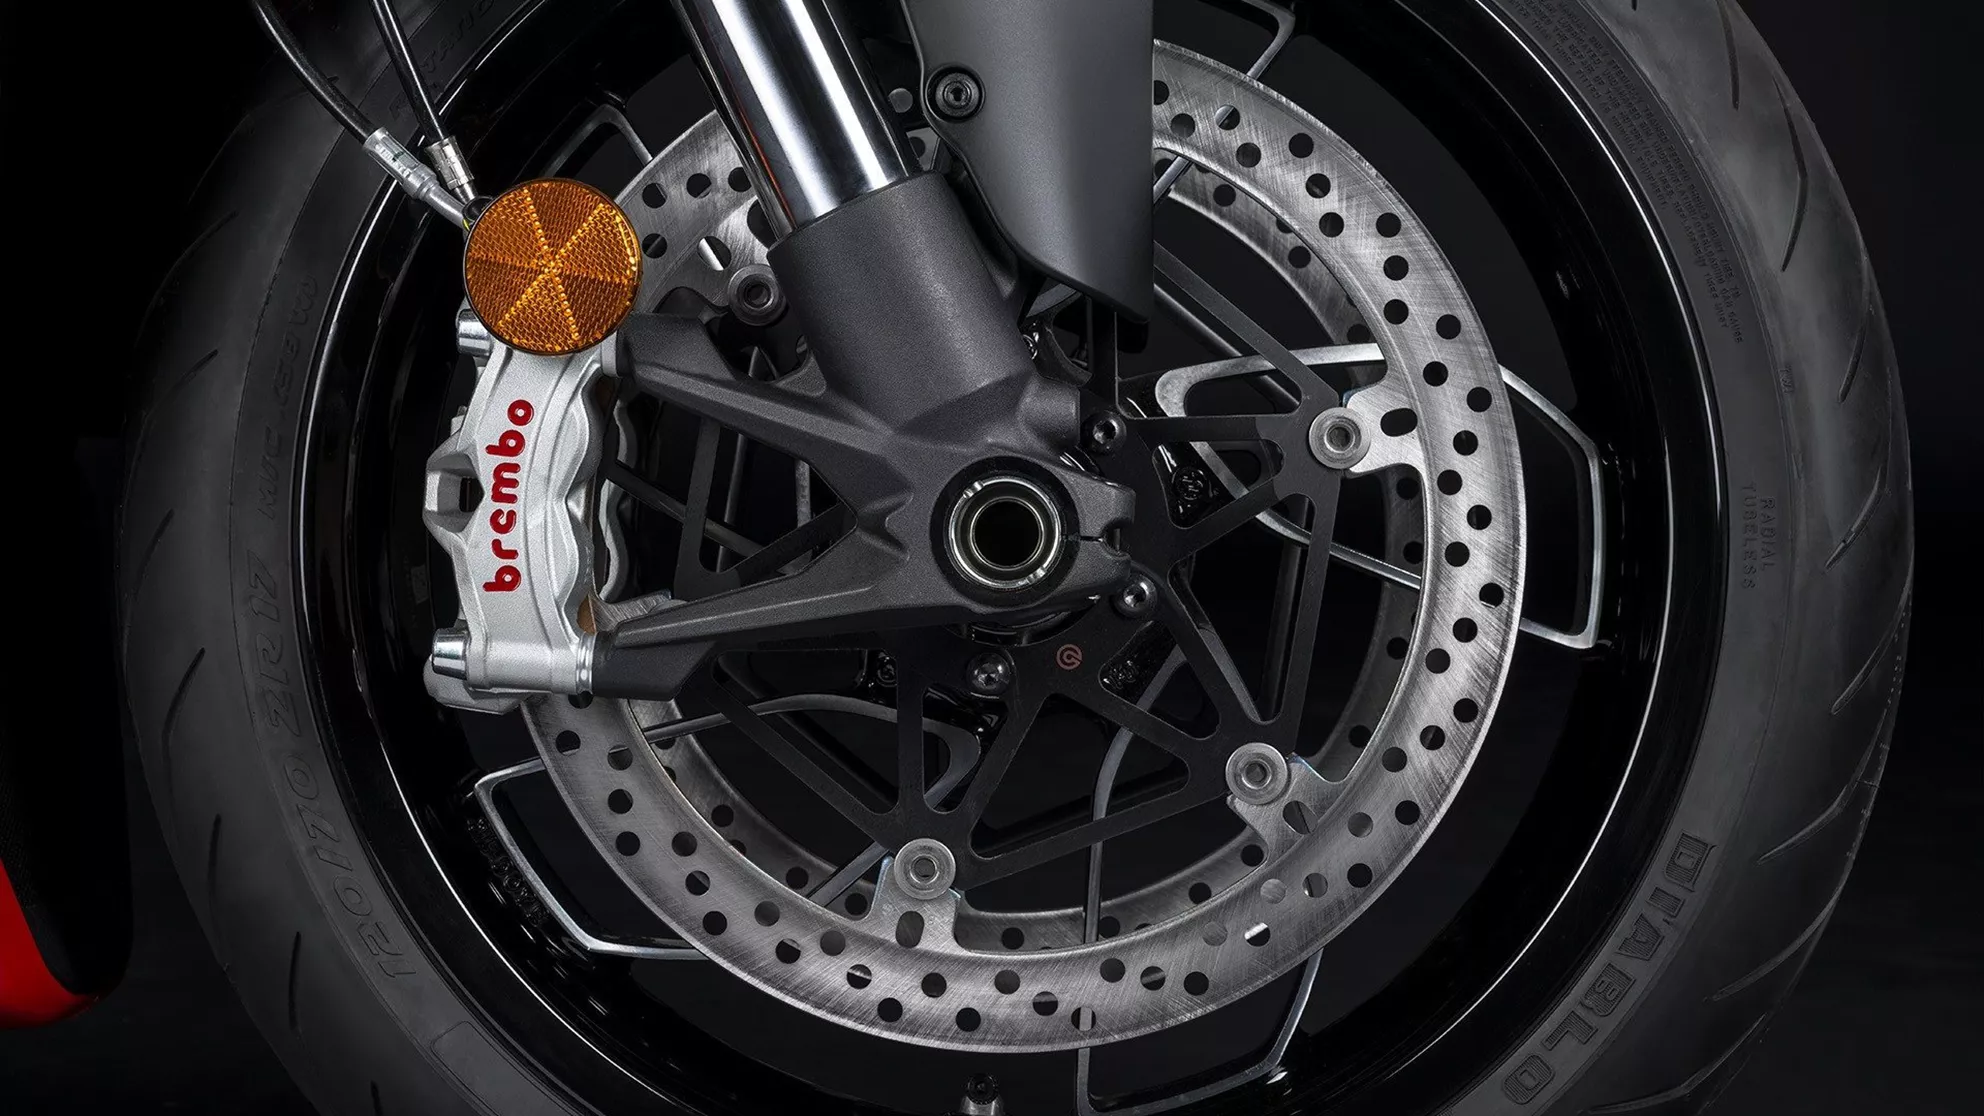 Bild Ducati Diavel V4